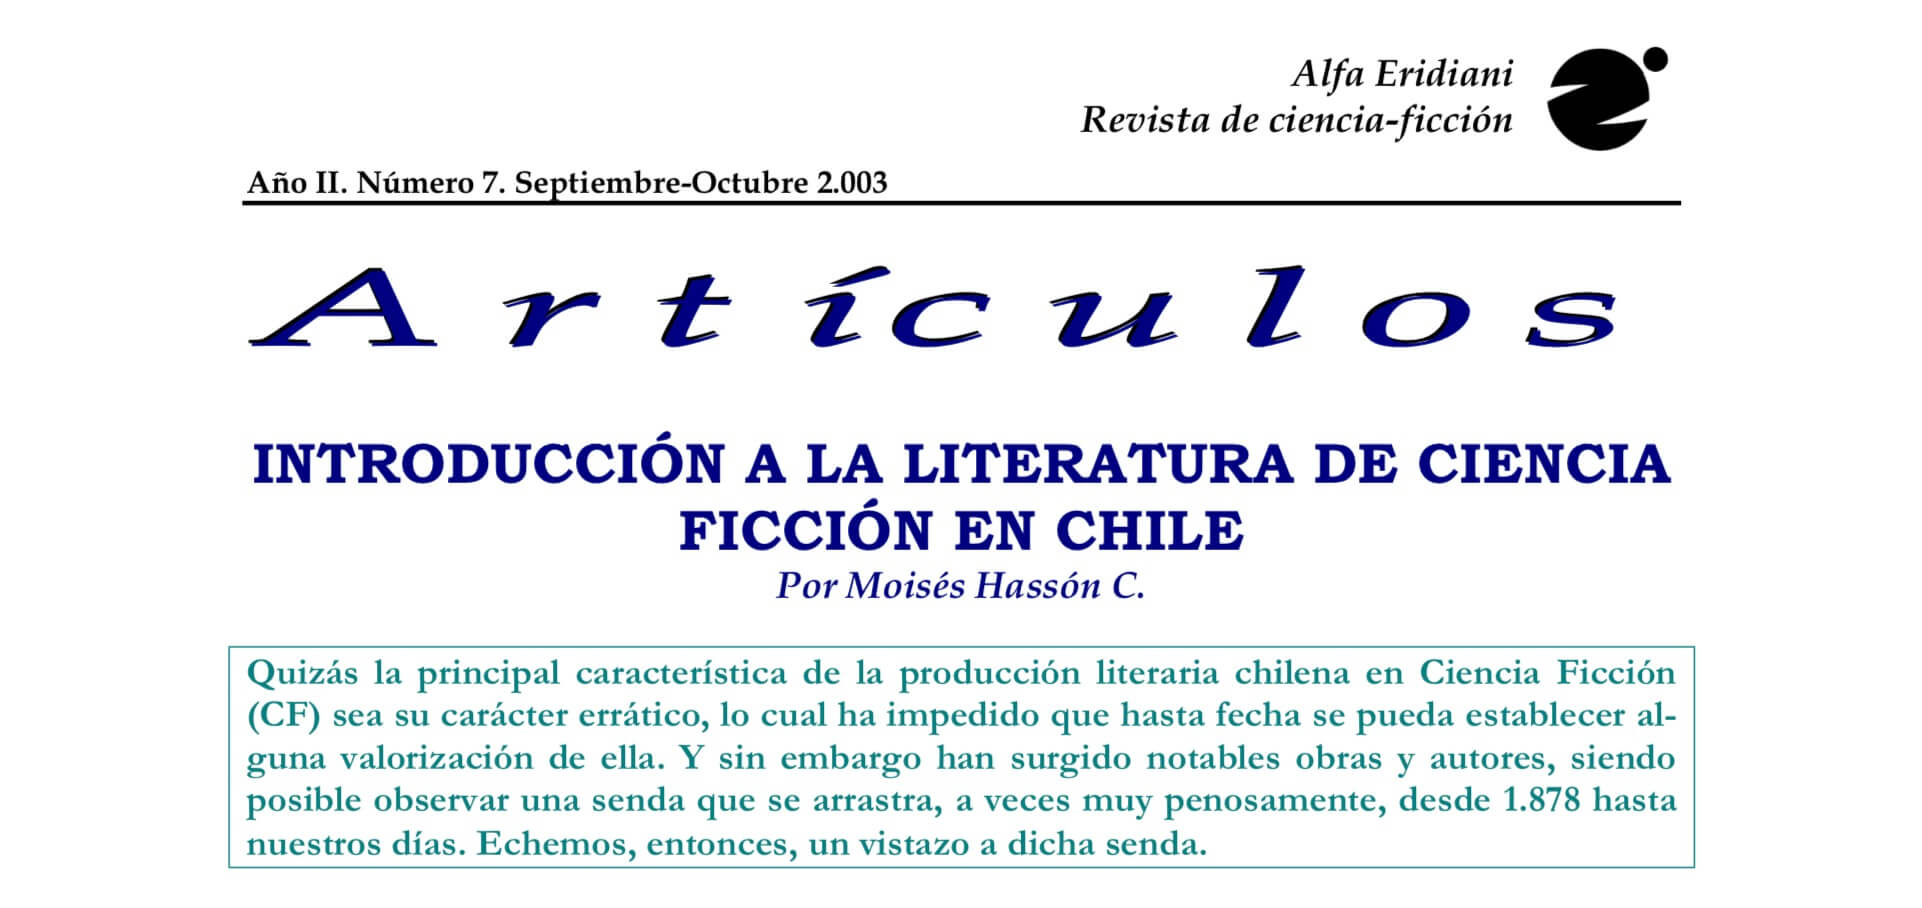 Introducción a la literatura de ciencia ficción en Chile